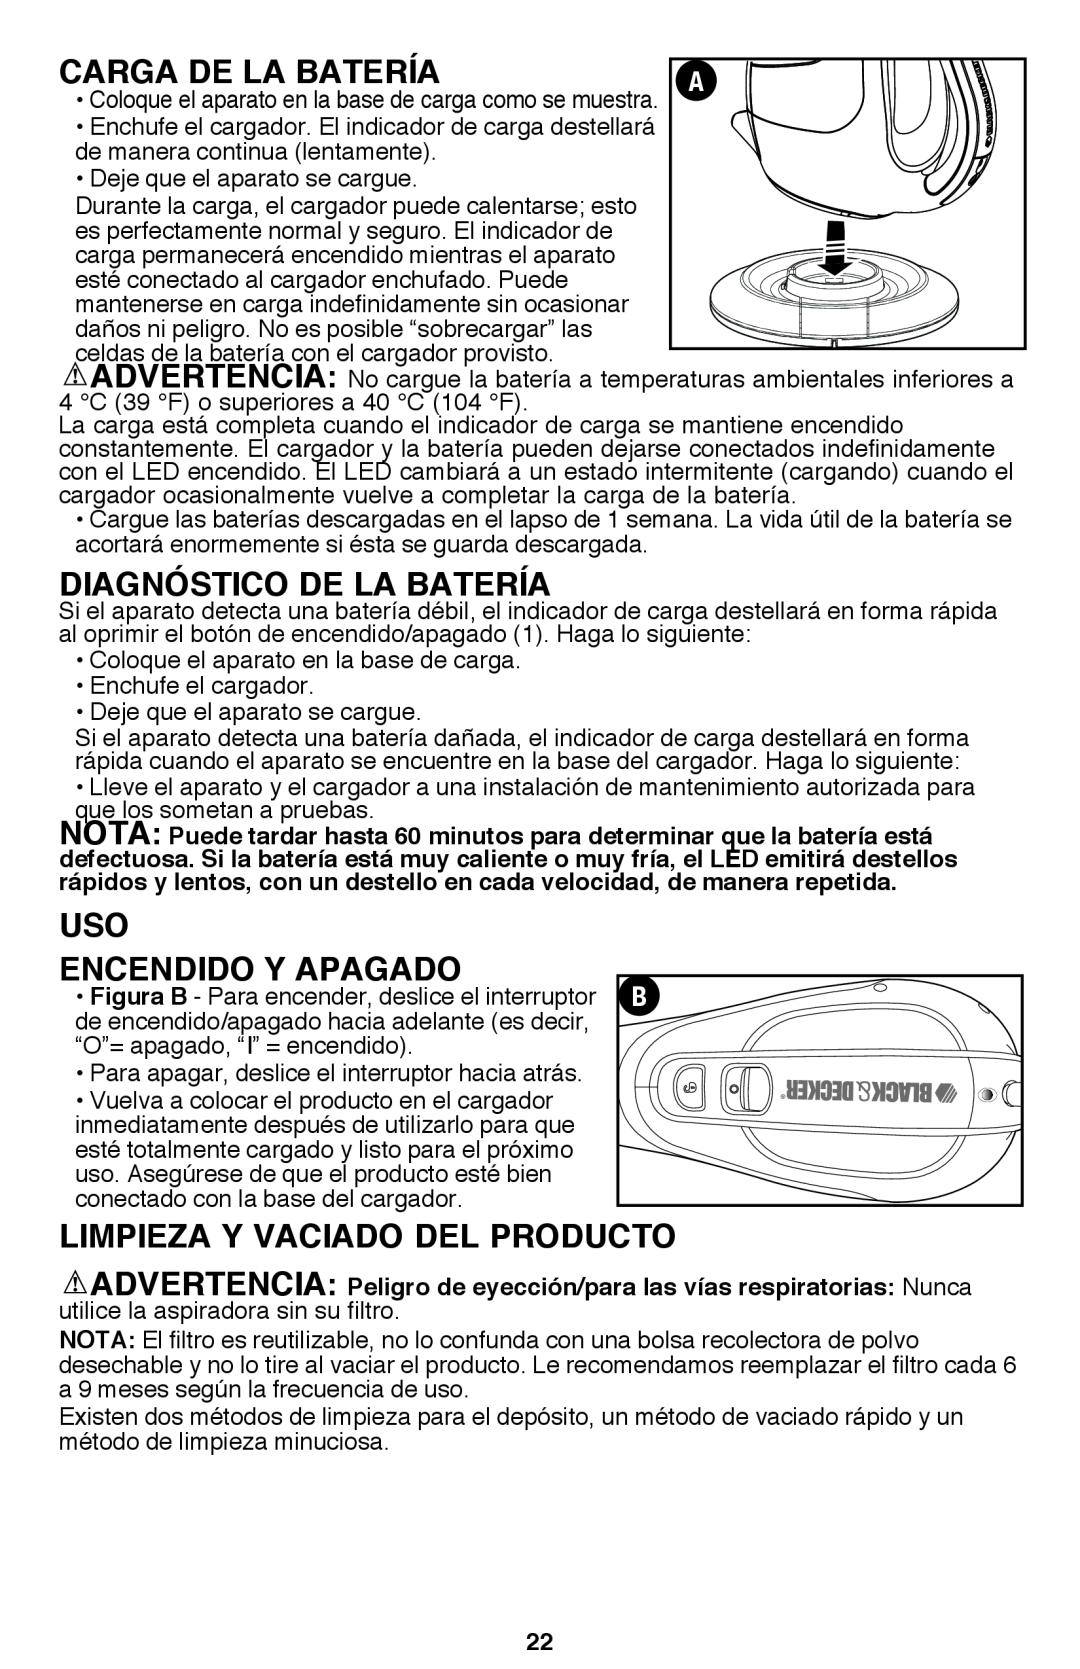 Black & Decker BDH2000L instruction manual Carga de la batería, Diagnóstico de la batería, Uso Encendido y apagado 